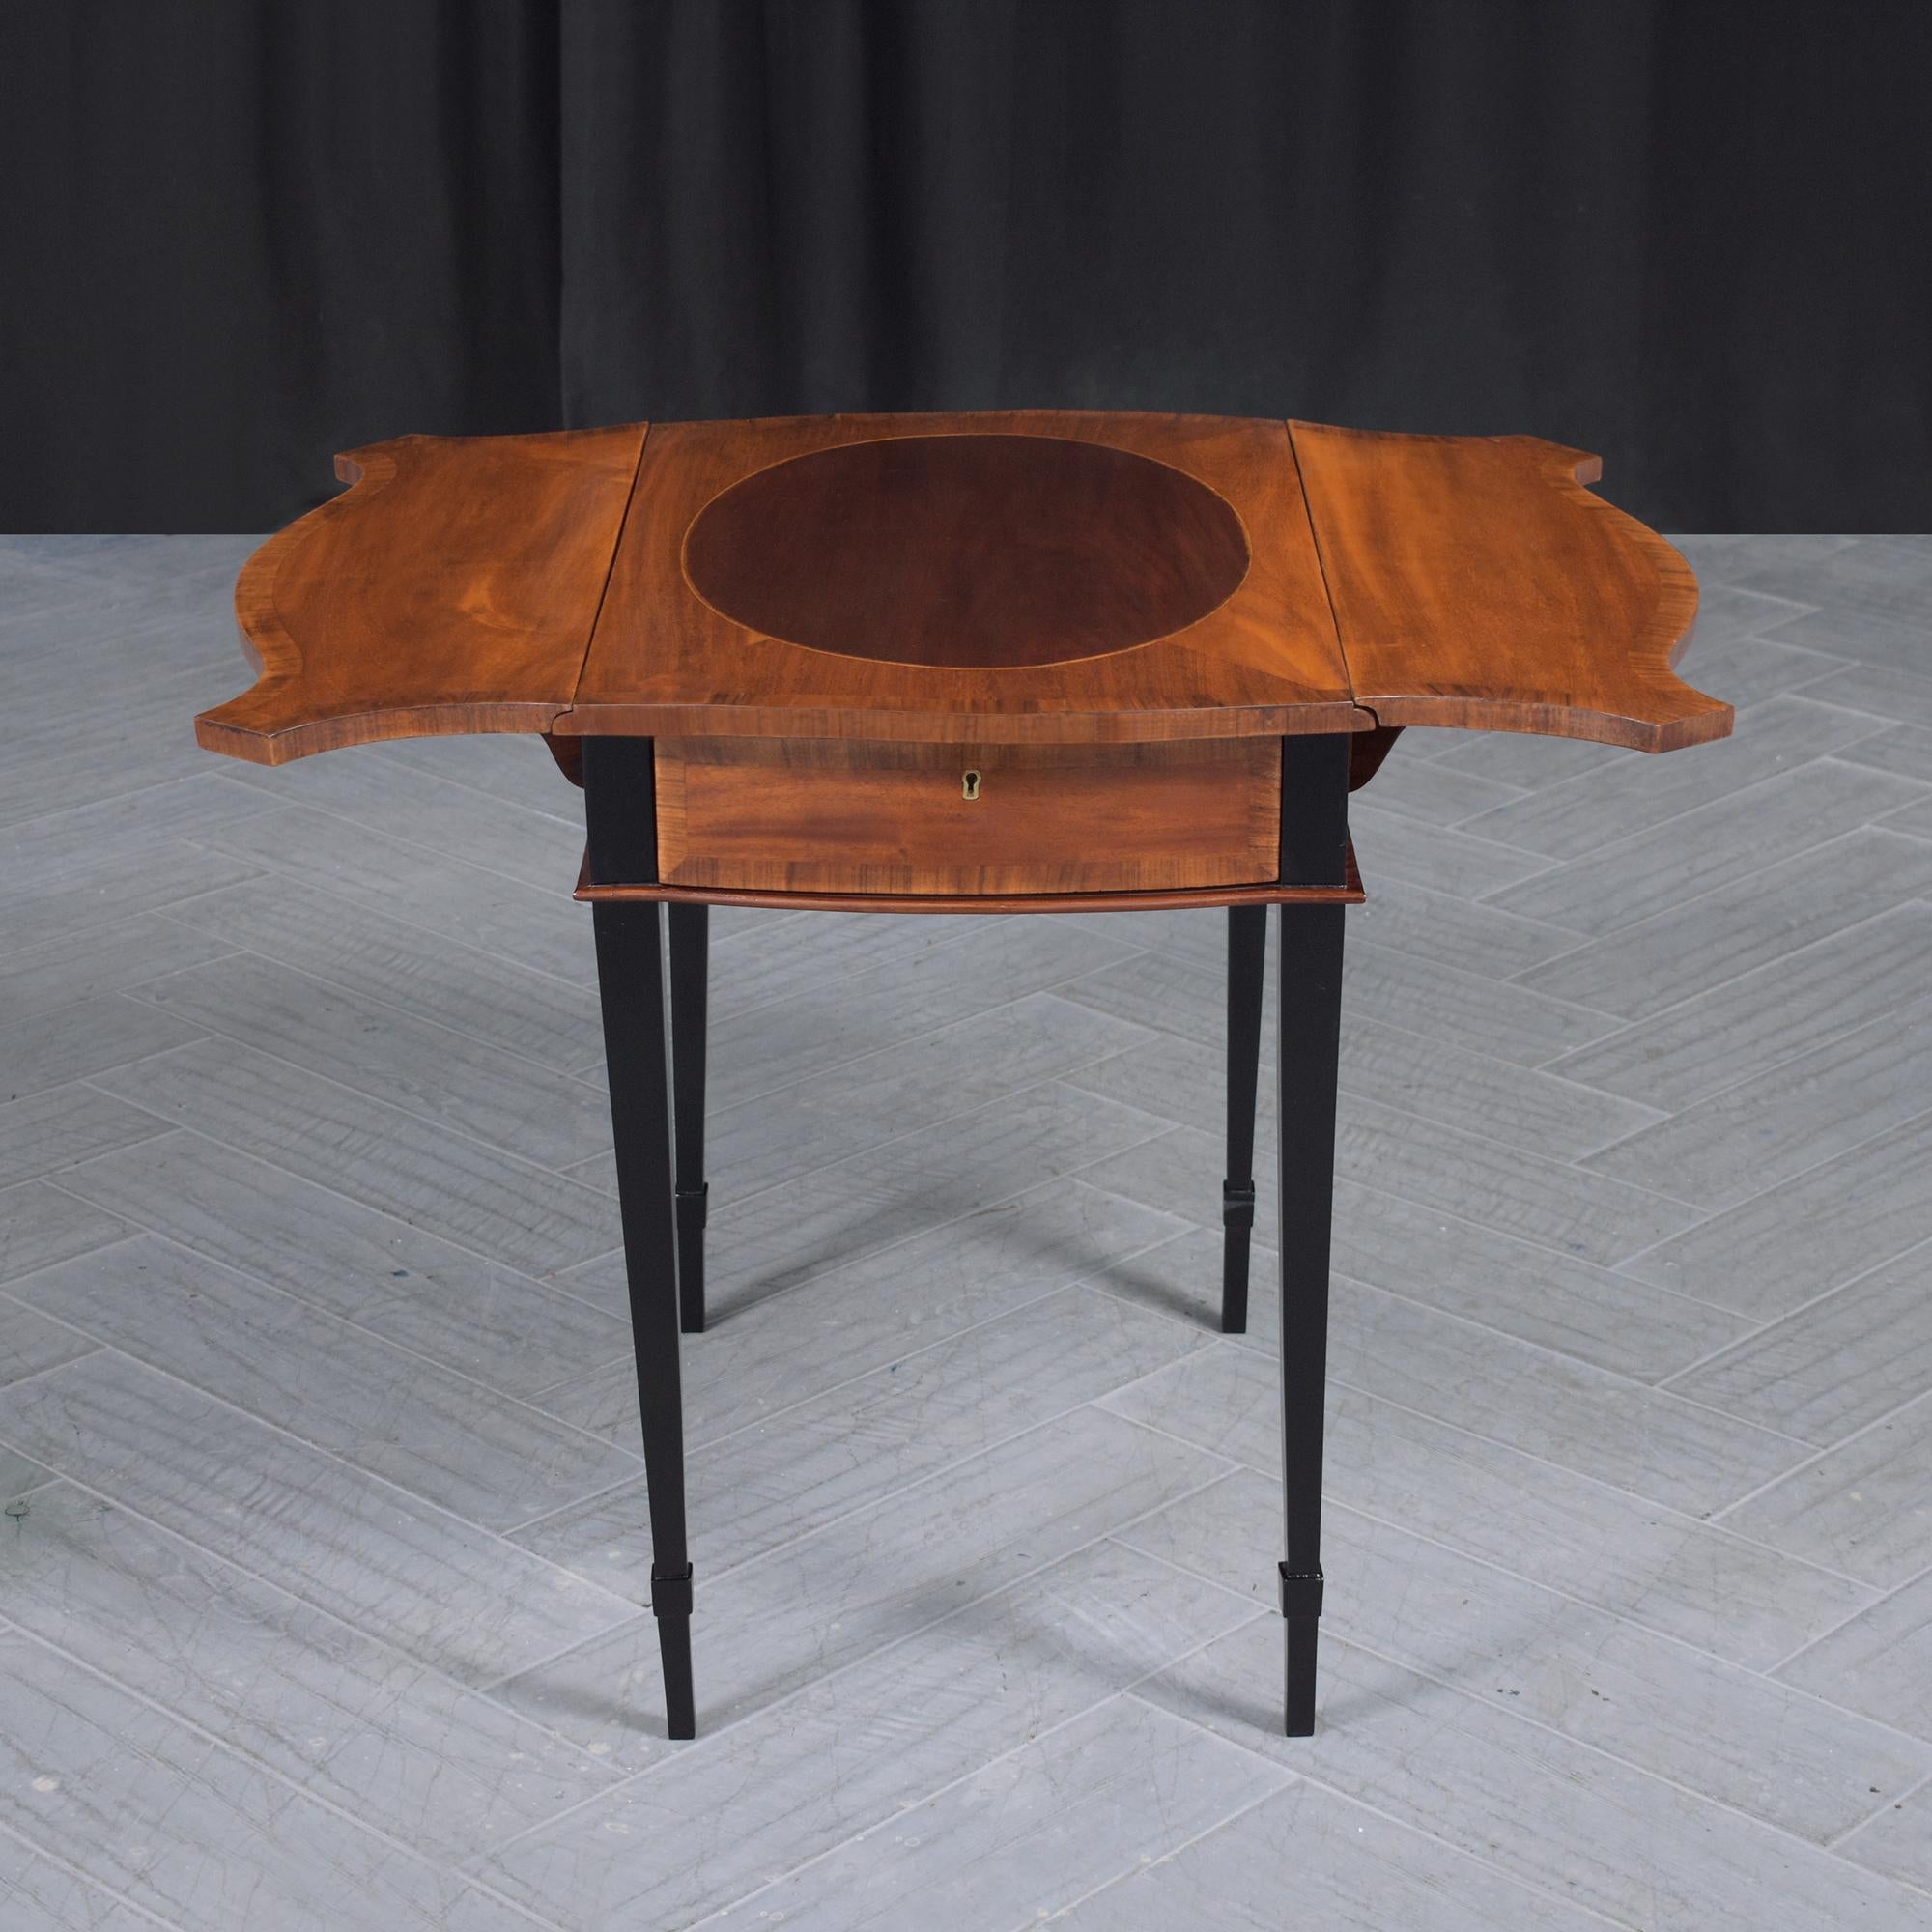 Entdecken Sie unseren fachmännisch restaurierten Pembroke-Tisch aus dem späten 19. Jahrhundert, ein Zeugnis feiner Handwerkskunst und zeitloser Eleganz. Dieser antike Beistelltisch wurde von Hand aus widerstandsfähigem Mahagoniholz gehauen und